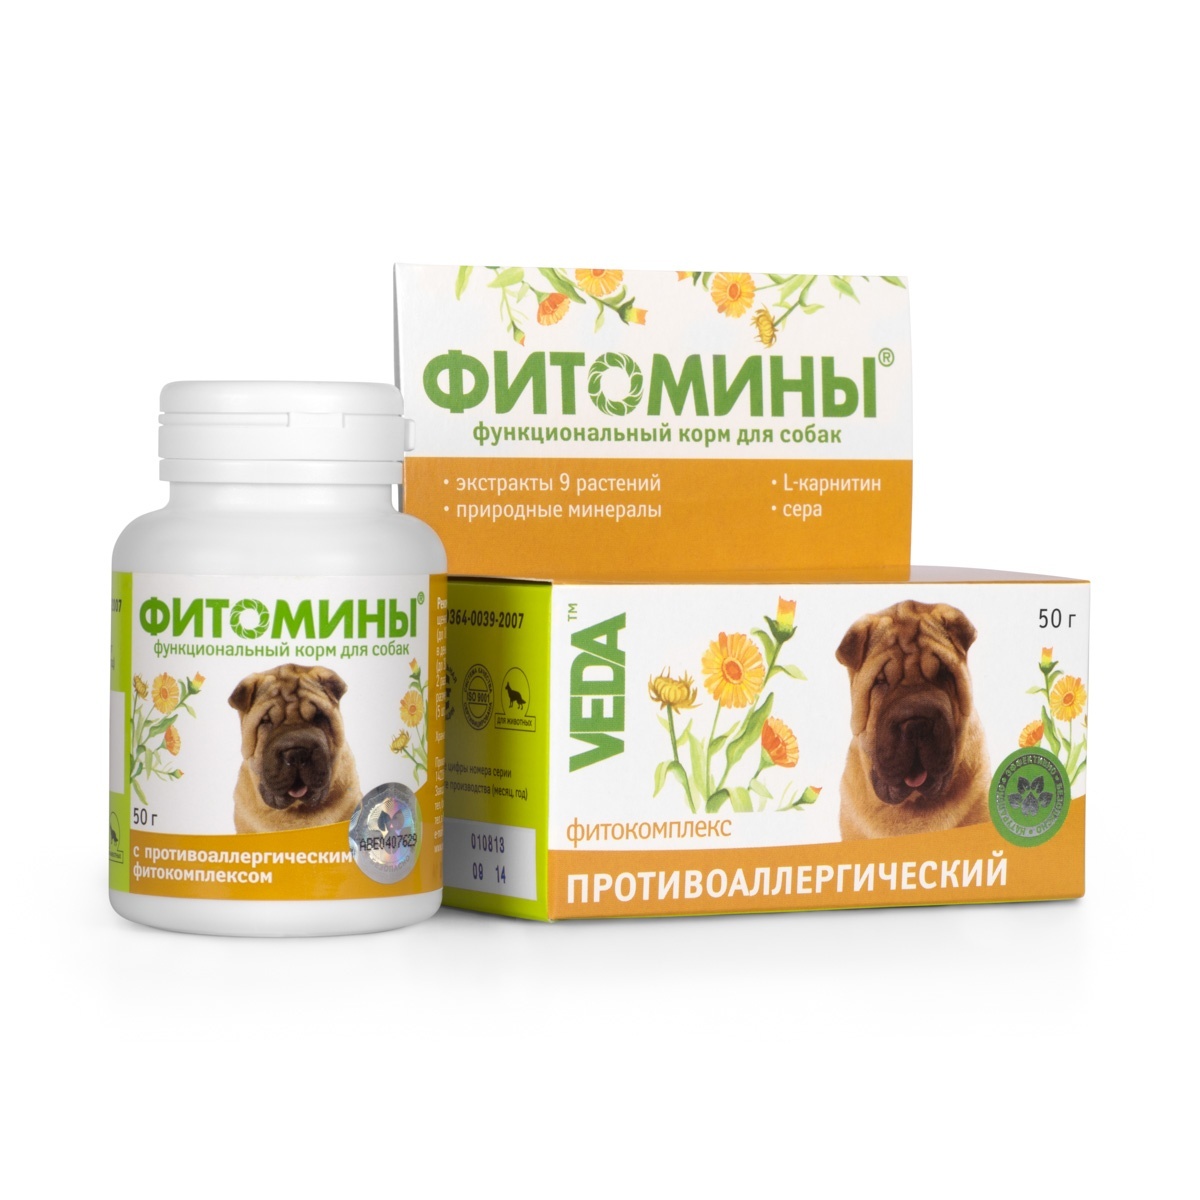 Веда Веда фитомины от аллергии для собак, 100 таб. (50 г) функционнальный корм веда фитомины для собак с очистительным фитокомплексом 50 гр 100 таб